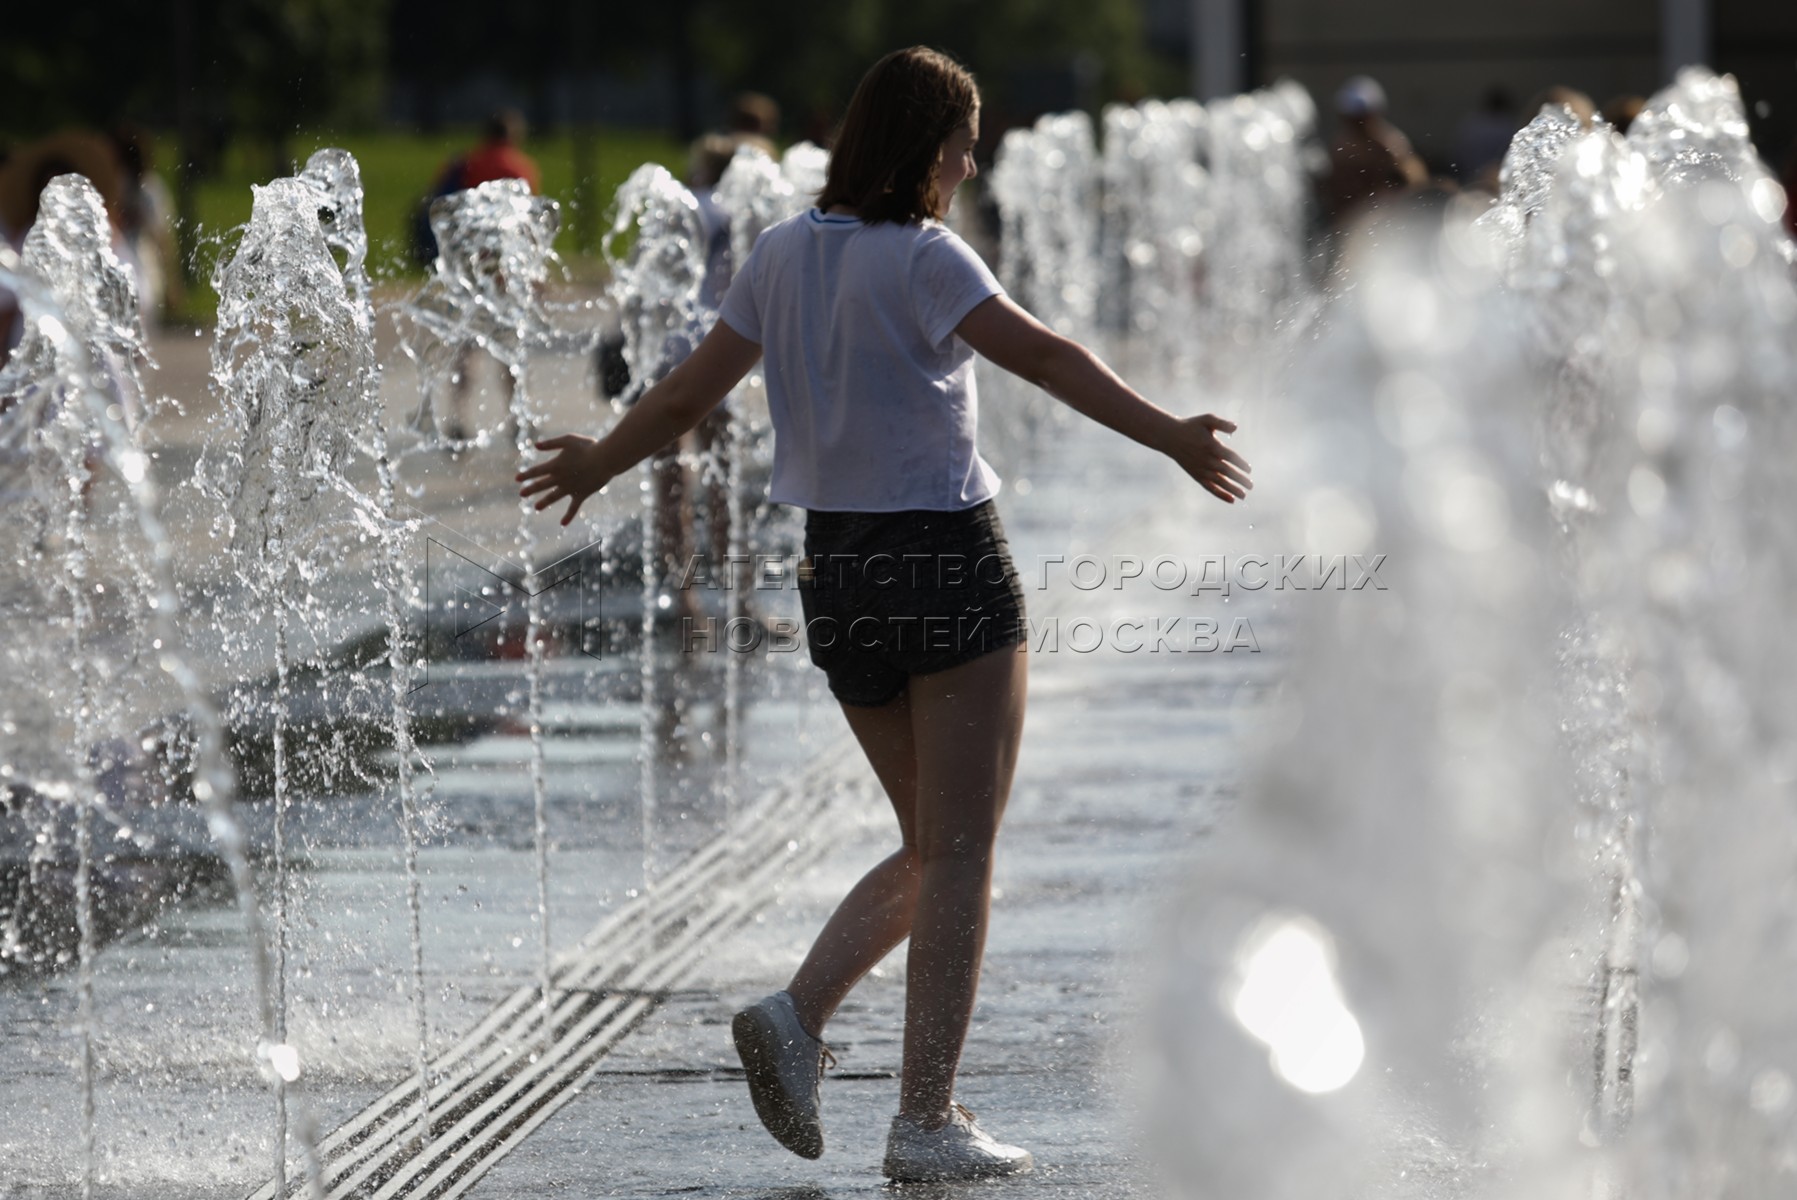 Летом будет аномальная жара. Жара фонтан. Лето жара город. Жаркое лето в Москве. Жара лето фонтан люди.